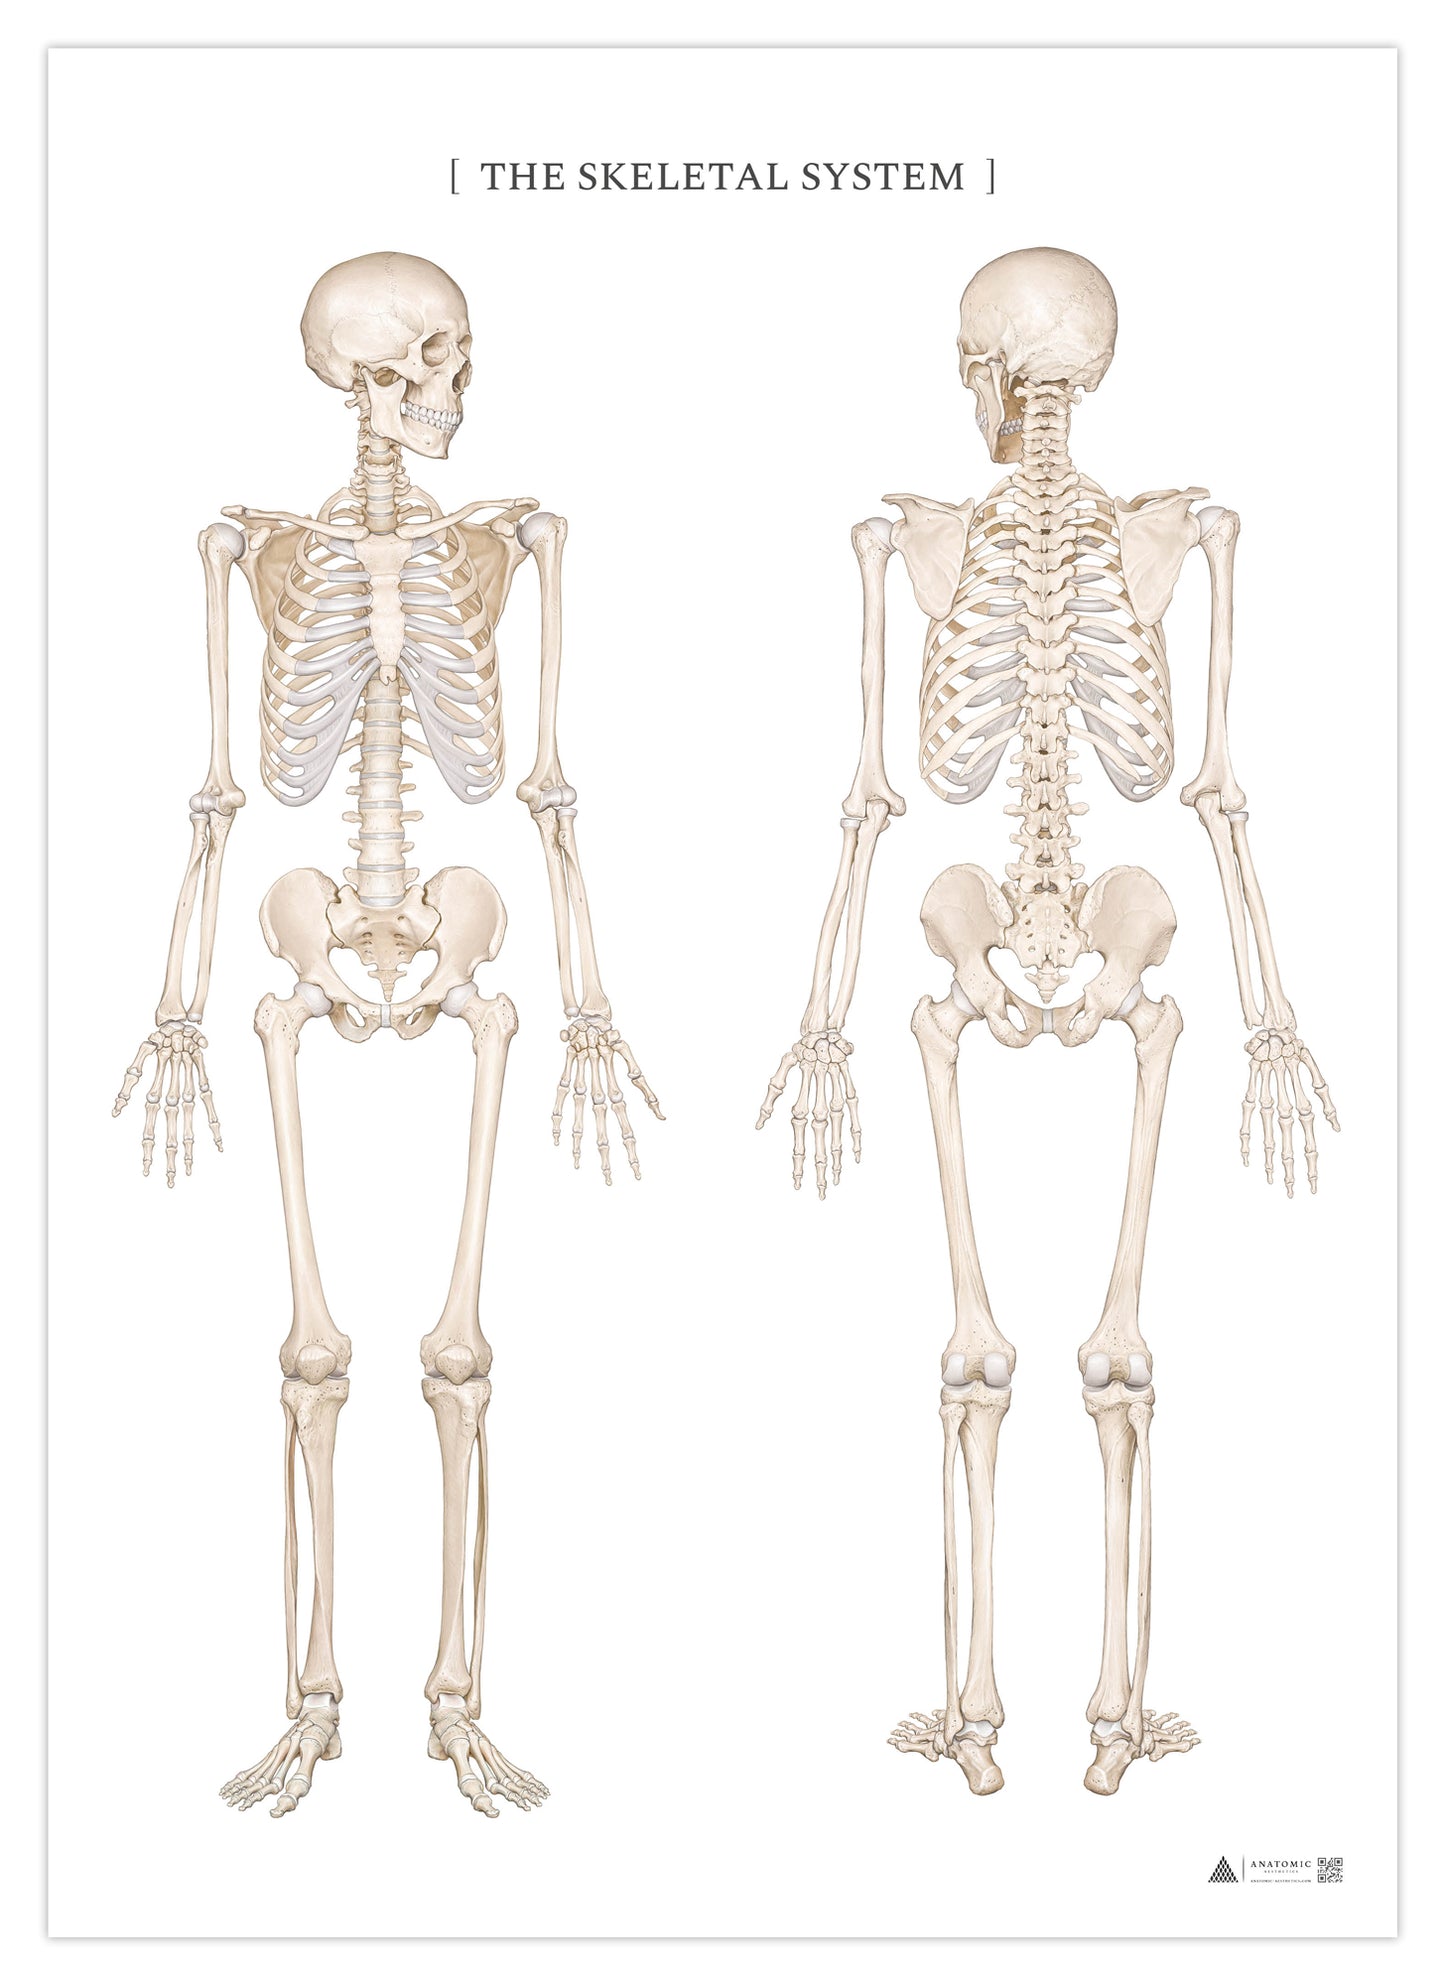 Anatomiaffisch - Skelettsystemet